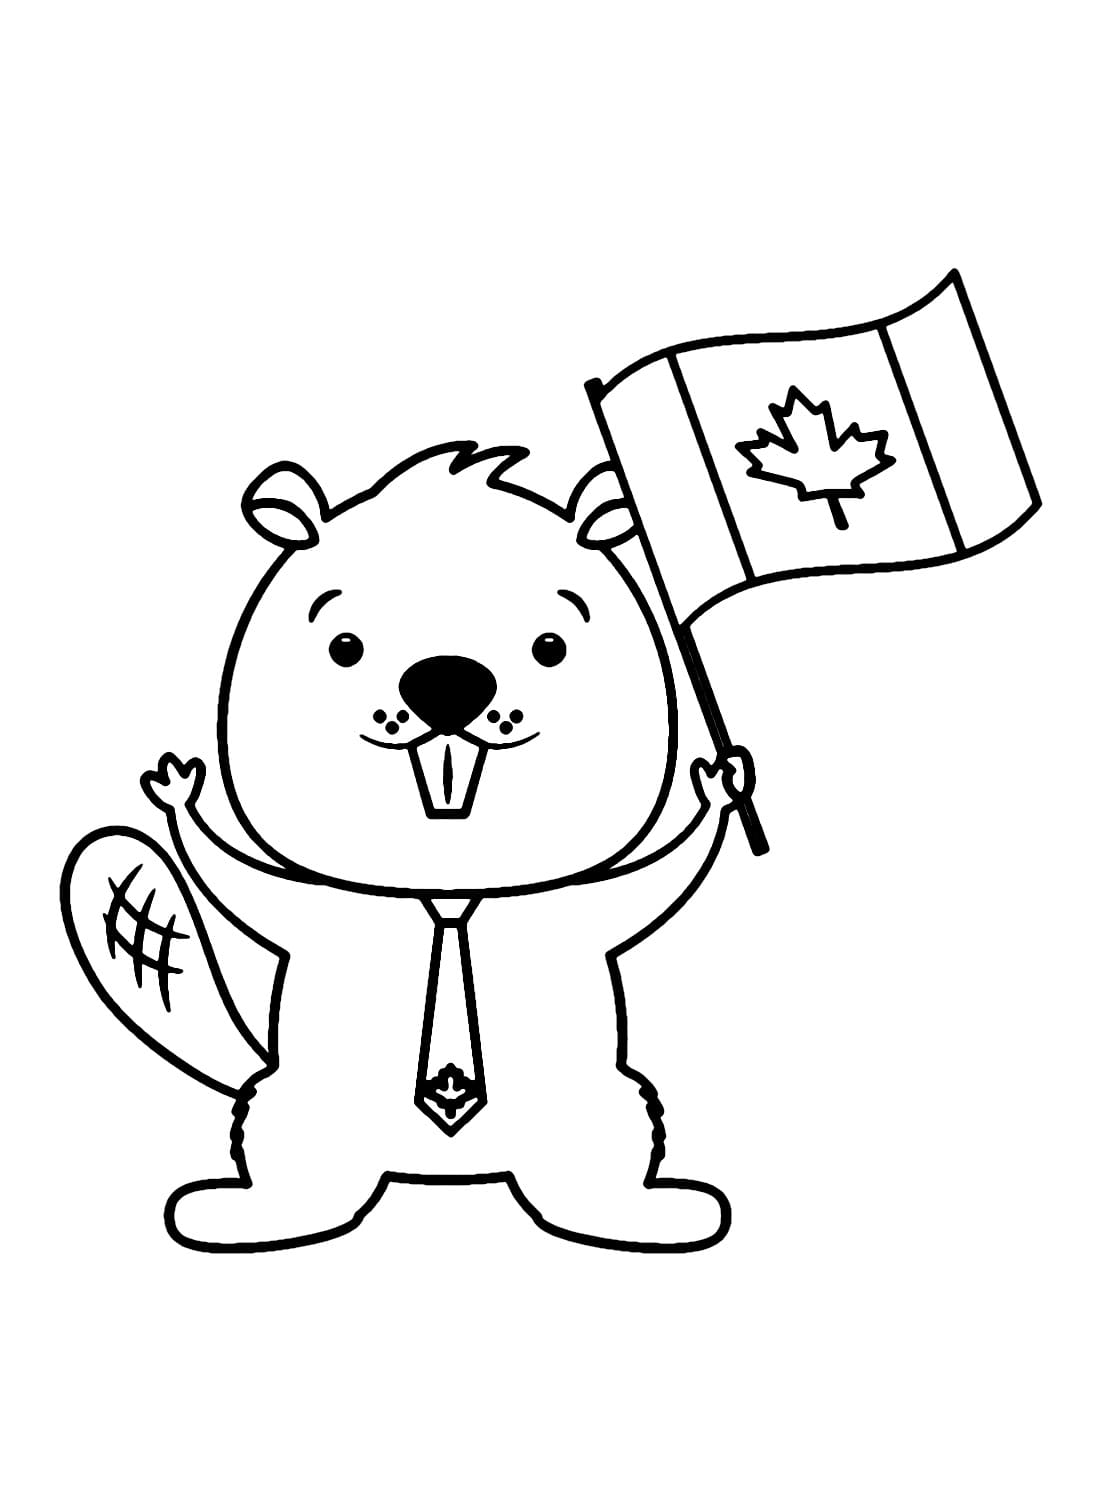 Fête du Canada avec Le Castor coloring page